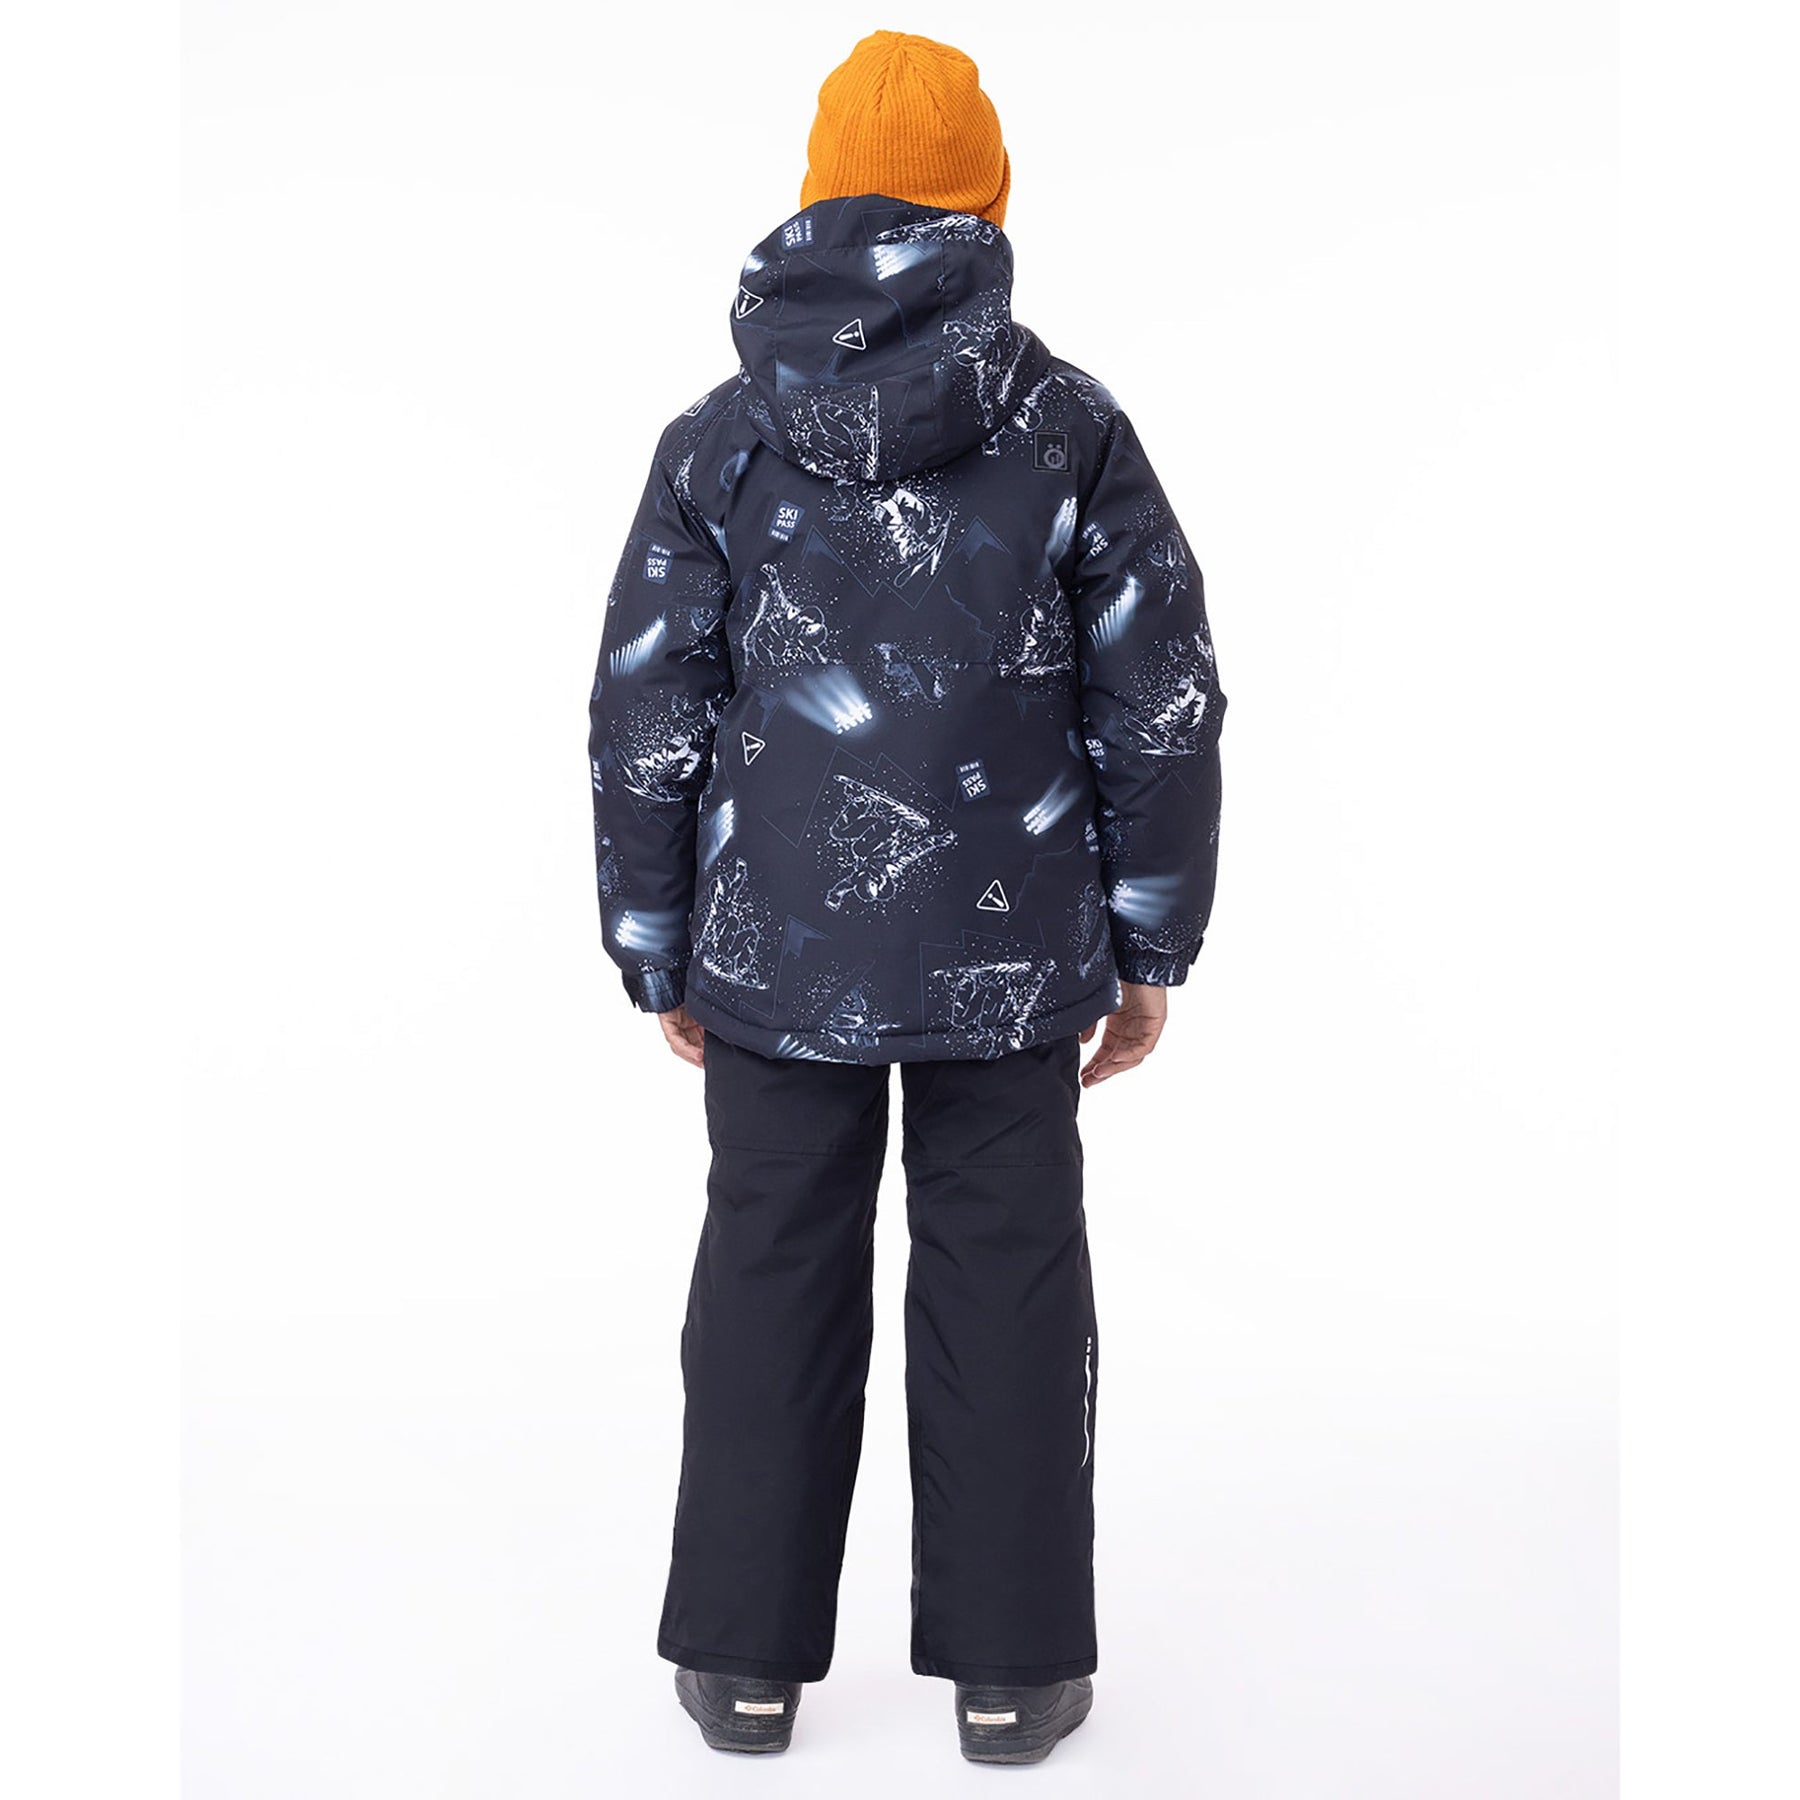 Manteau d'hiver pour enfant garçon par Snö | Thomas F23M327 Noir | Boutique Flos, vêtements mode pour bébés et enfants